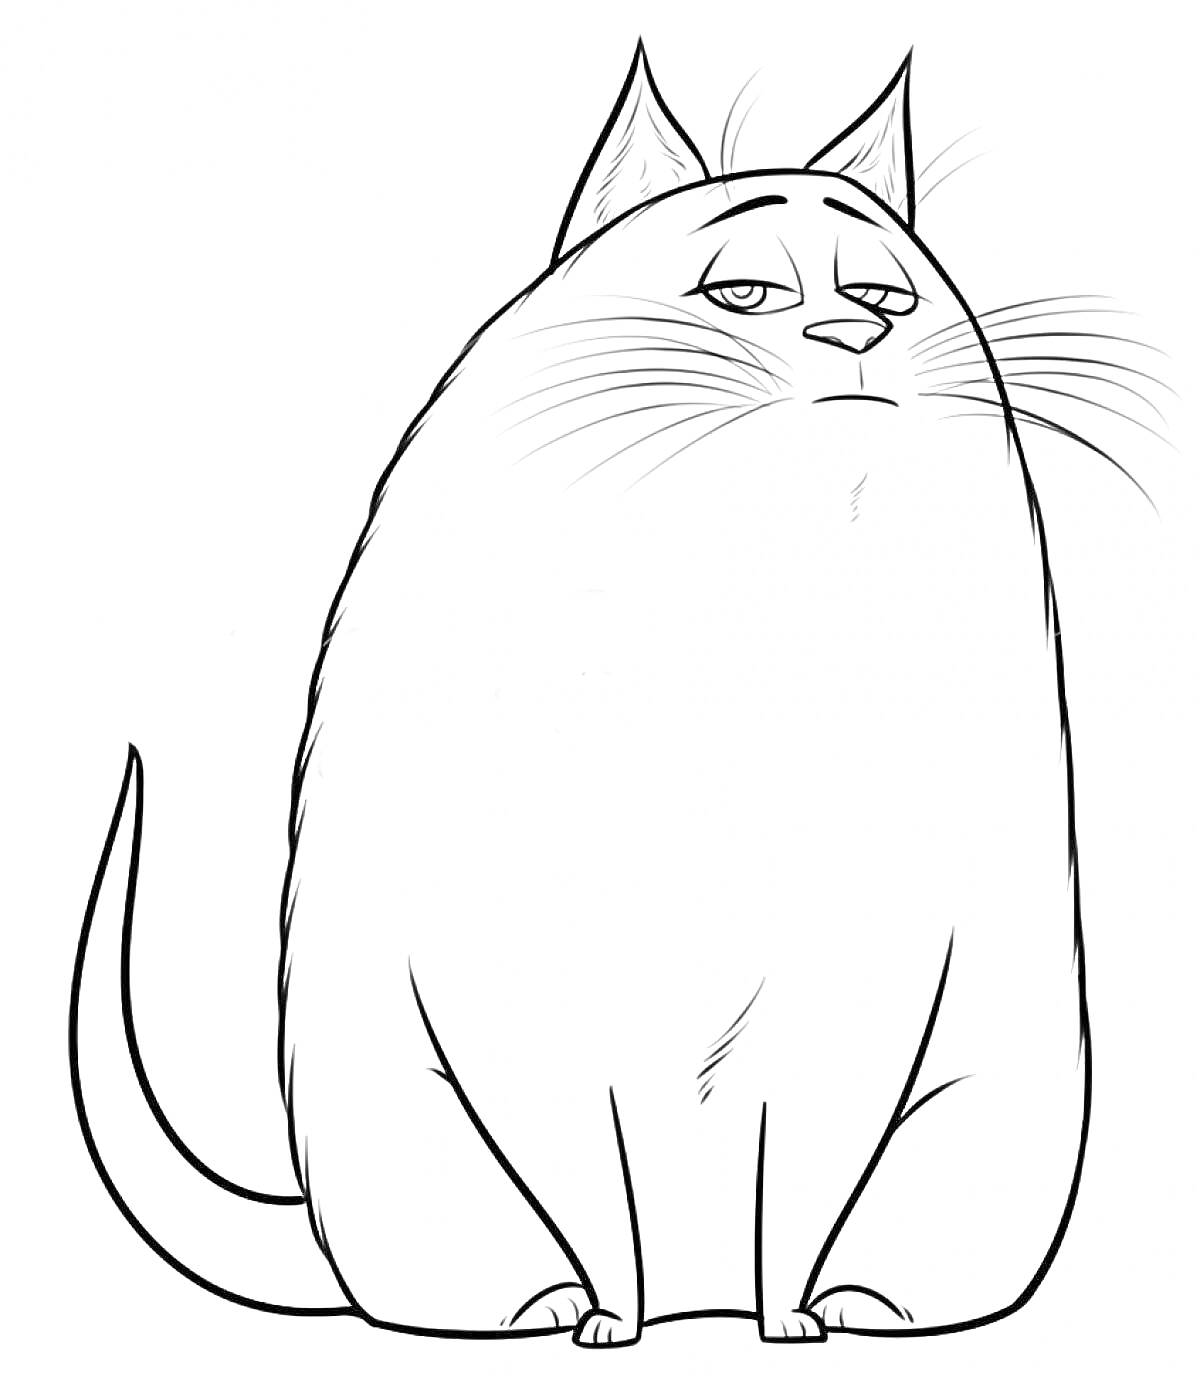 Раскраска Толстая, печальная кошка из мультфильма 